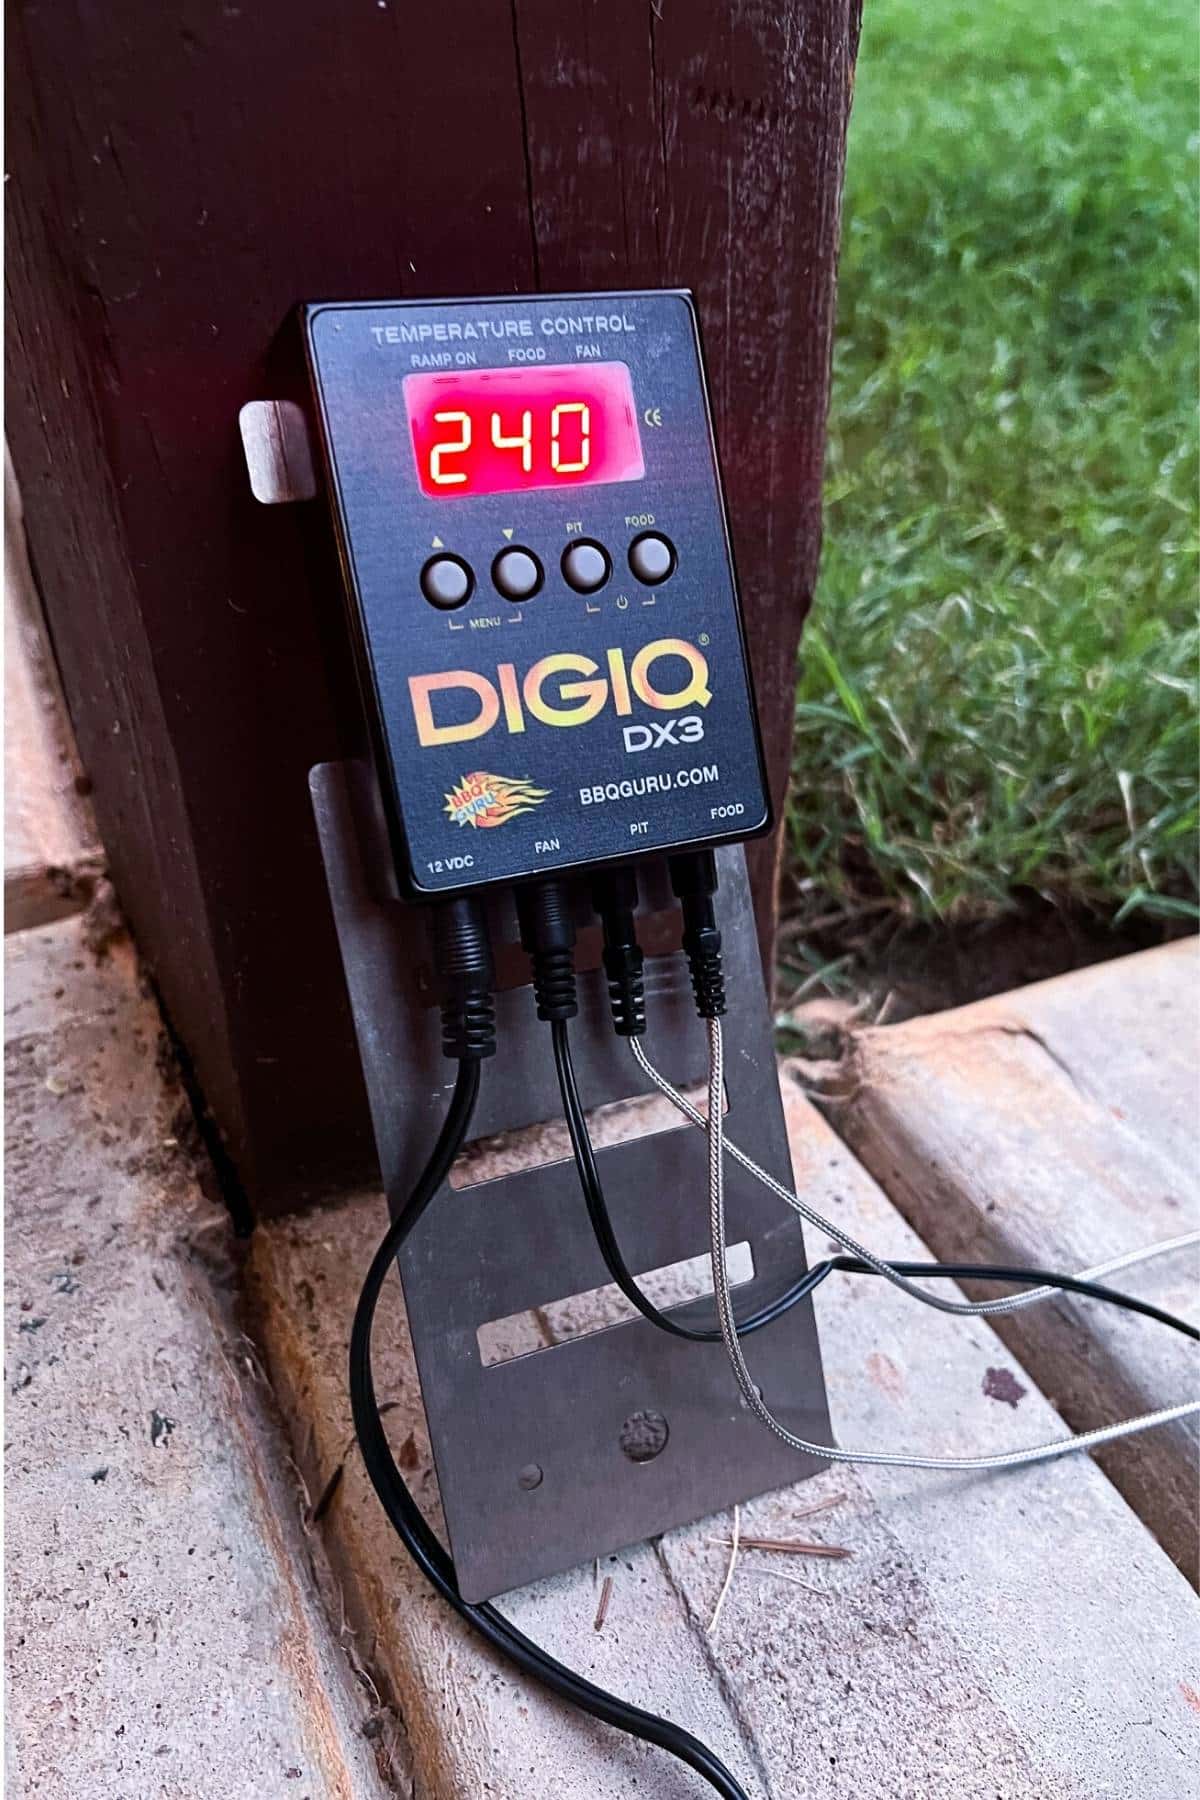 DigiQ set to 240 degrees